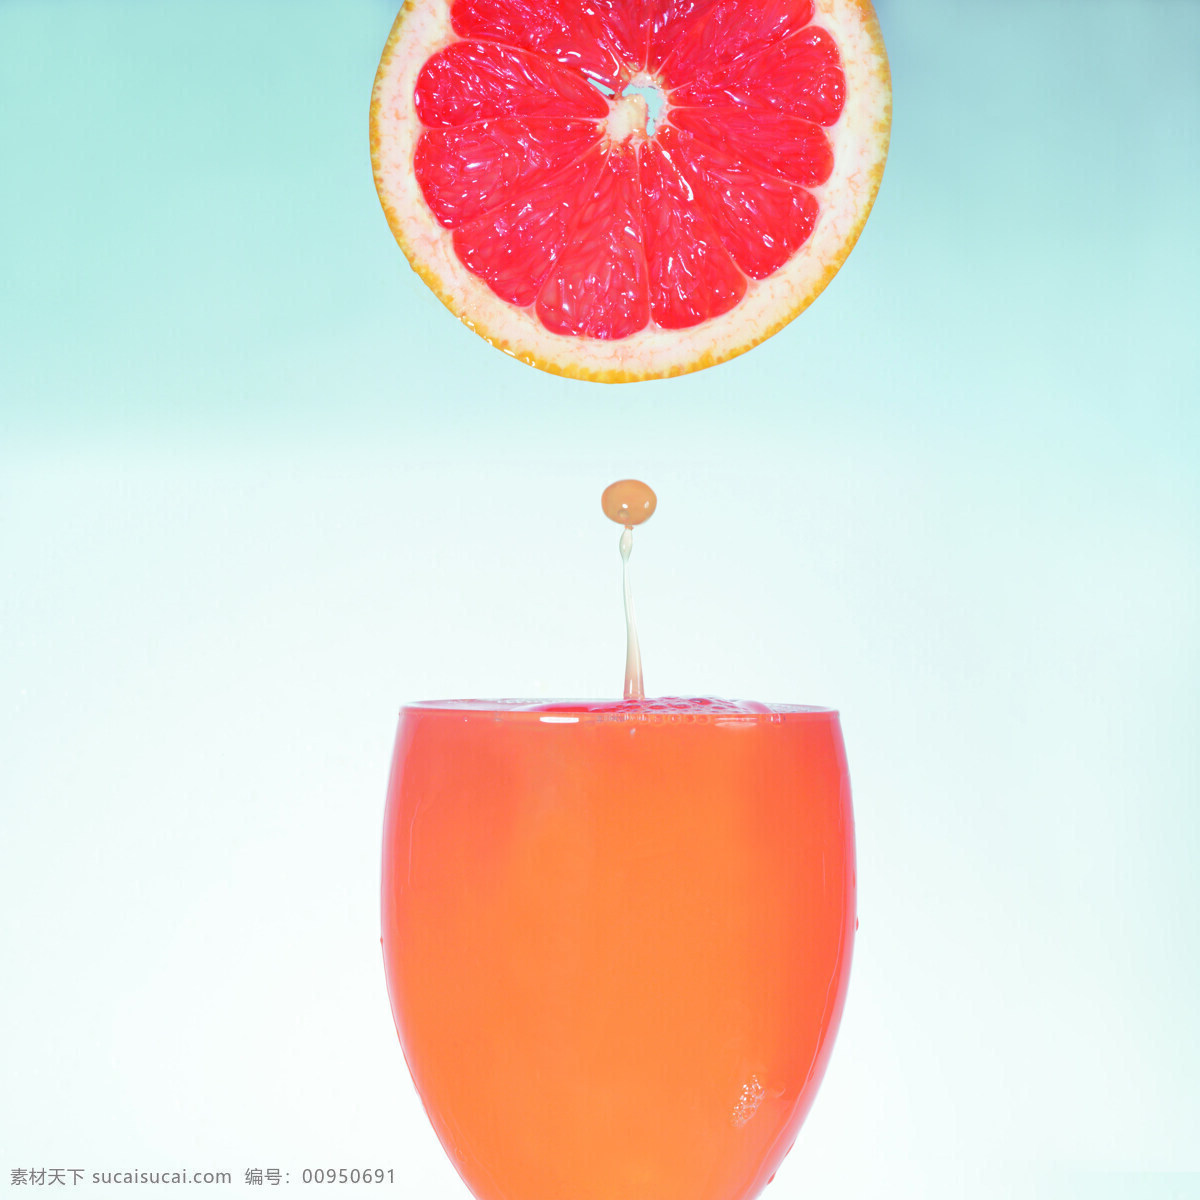 张 高清 水果 饮料 菠萝 橙子 创意 番茄 果汁 柠檬 葡萄 水蜜桃 提子 纯 天然 西瓜 柚子 杨桃 马强